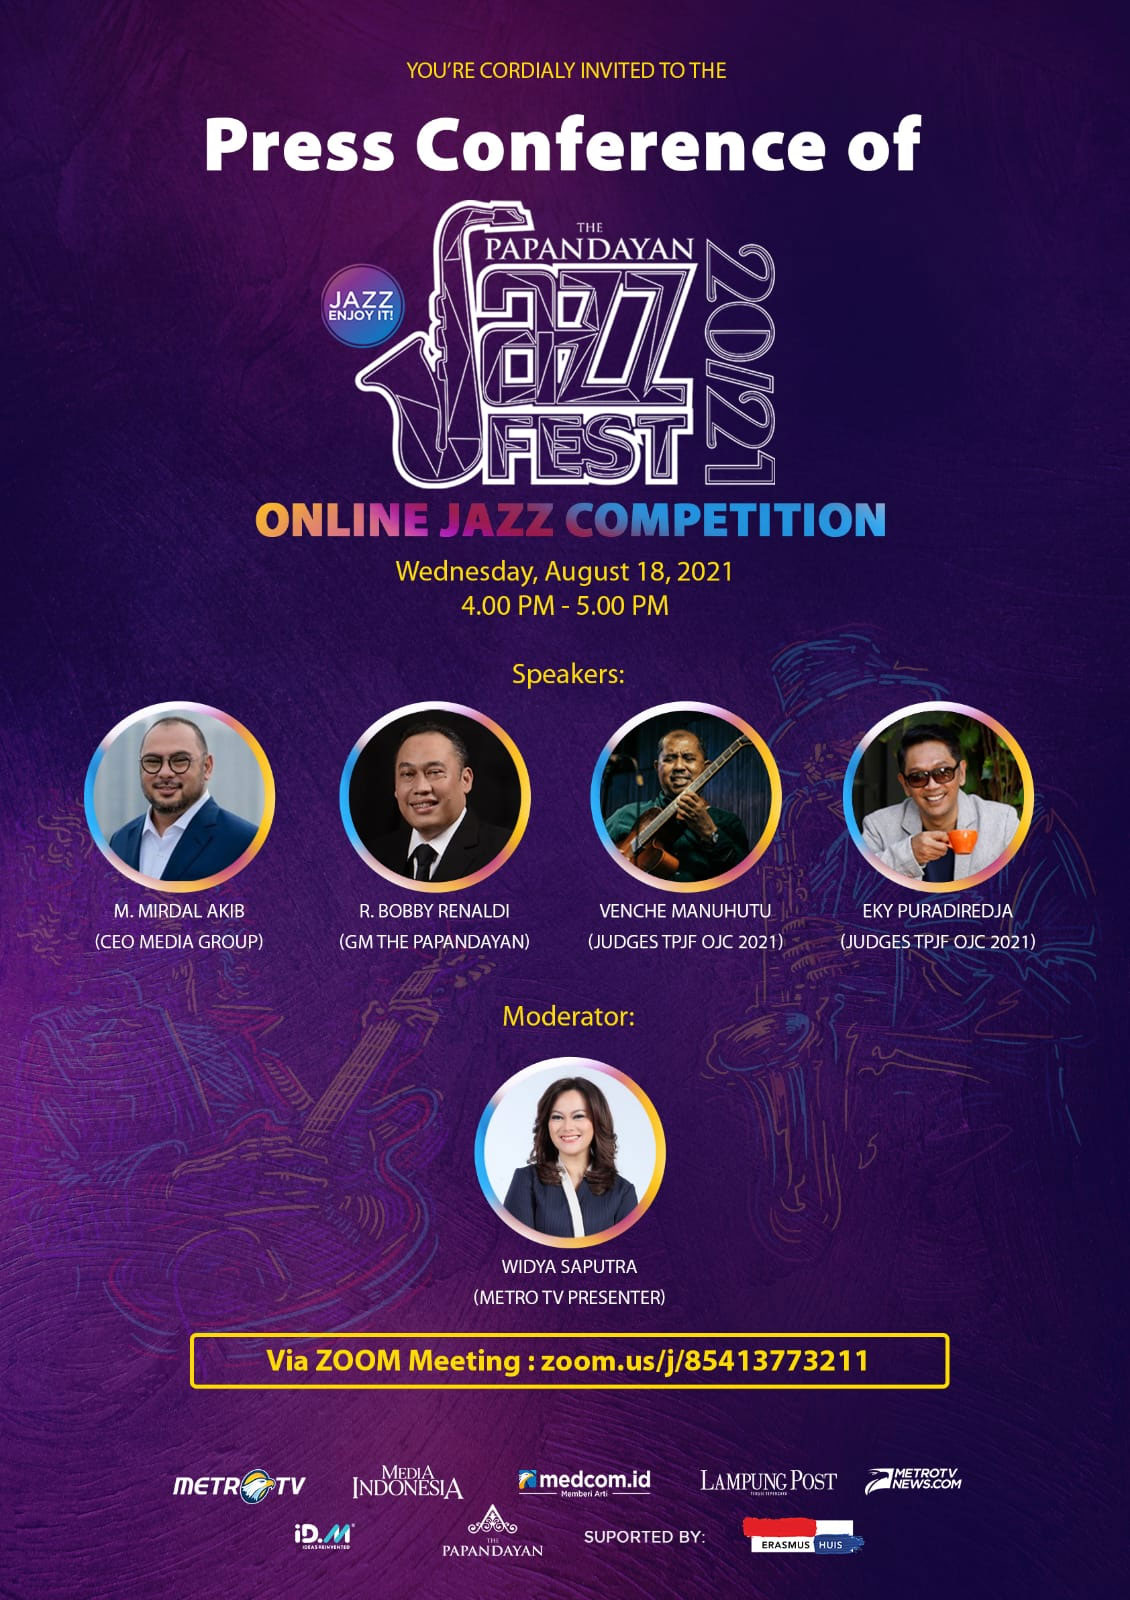 Diawali Kompetisi Jazz Online, The Papandayan Jazz Fest Kembali Hadir Desember Nanti